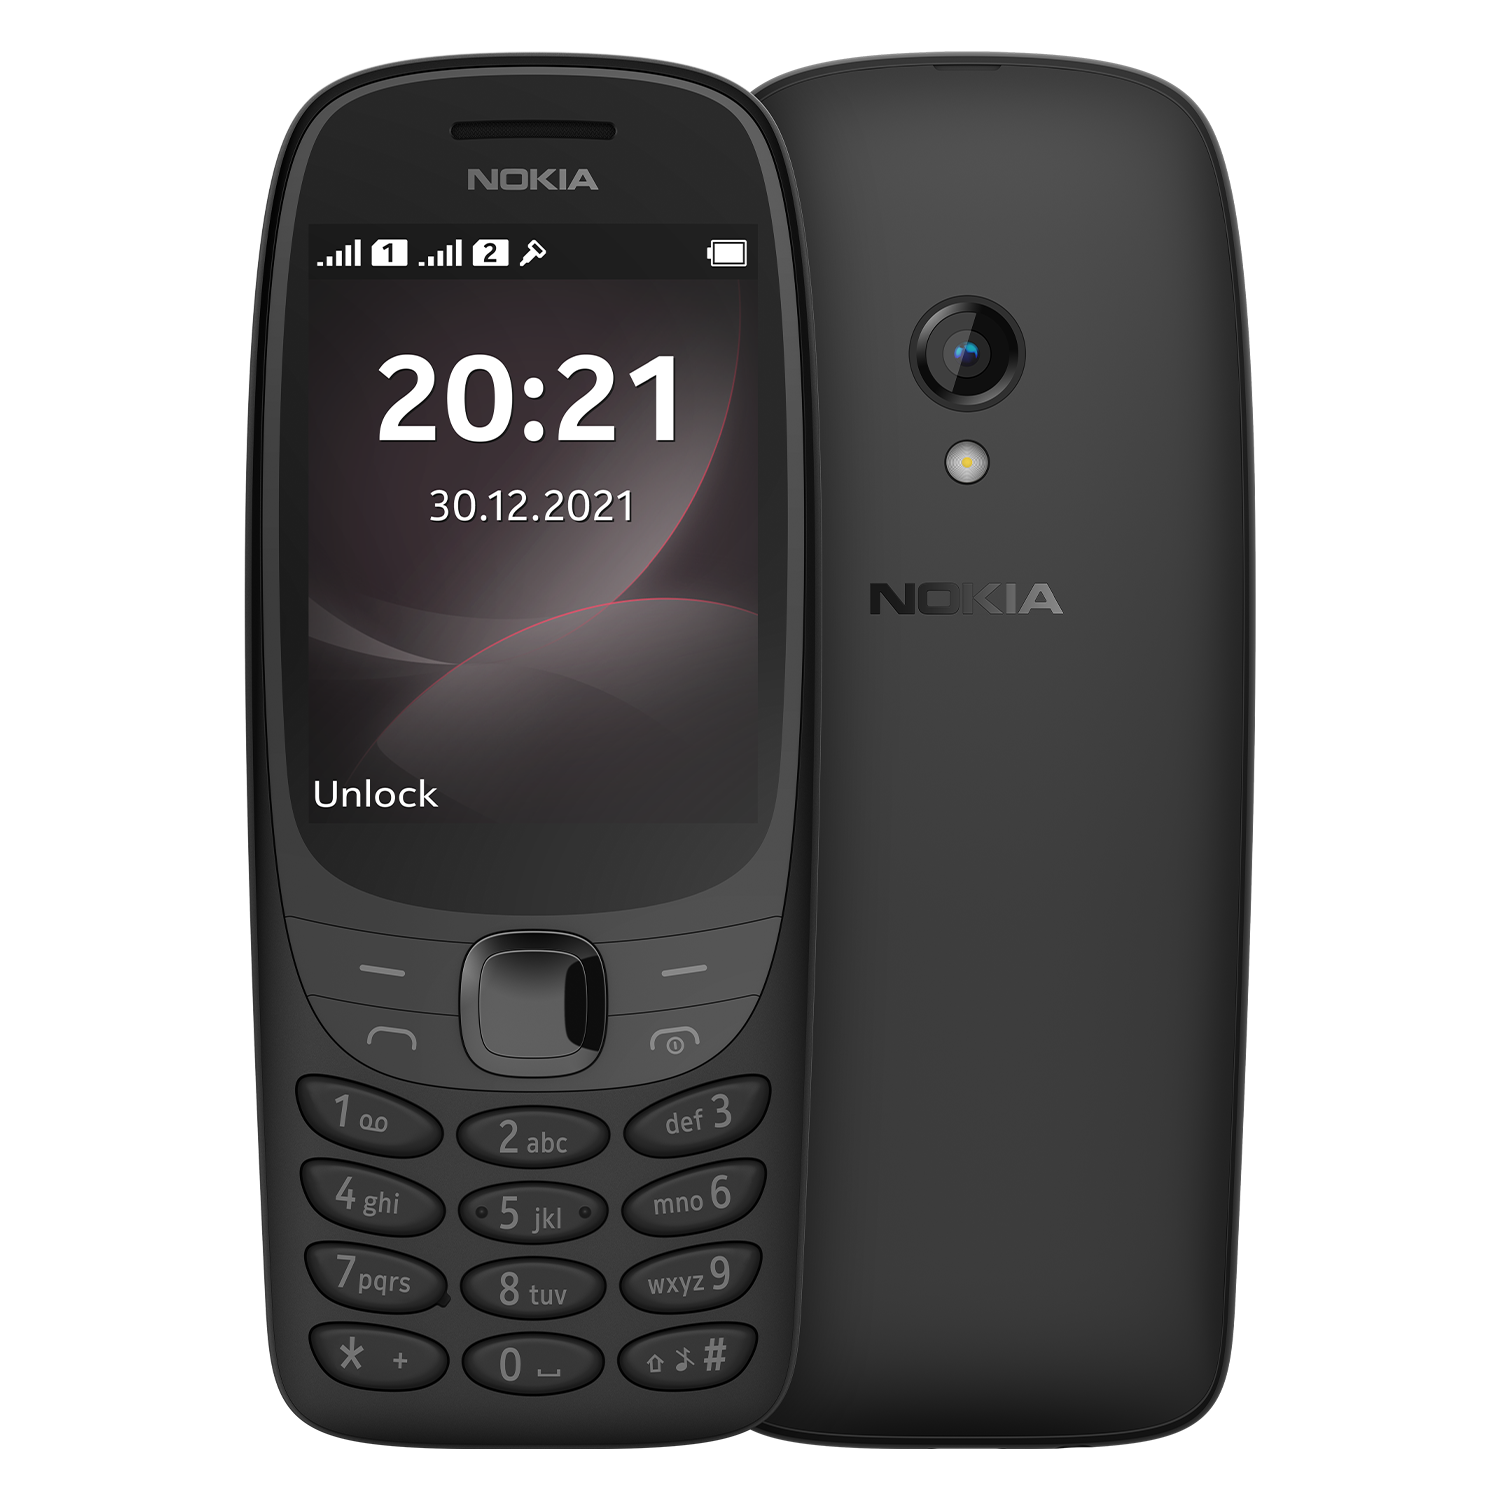 Celular Nokia 6310 4G 32GB / Dual SIM / Tela 2.8'' / Whatsapp Wifi / Bluetooth / Câmera 0.3 MP - Preto